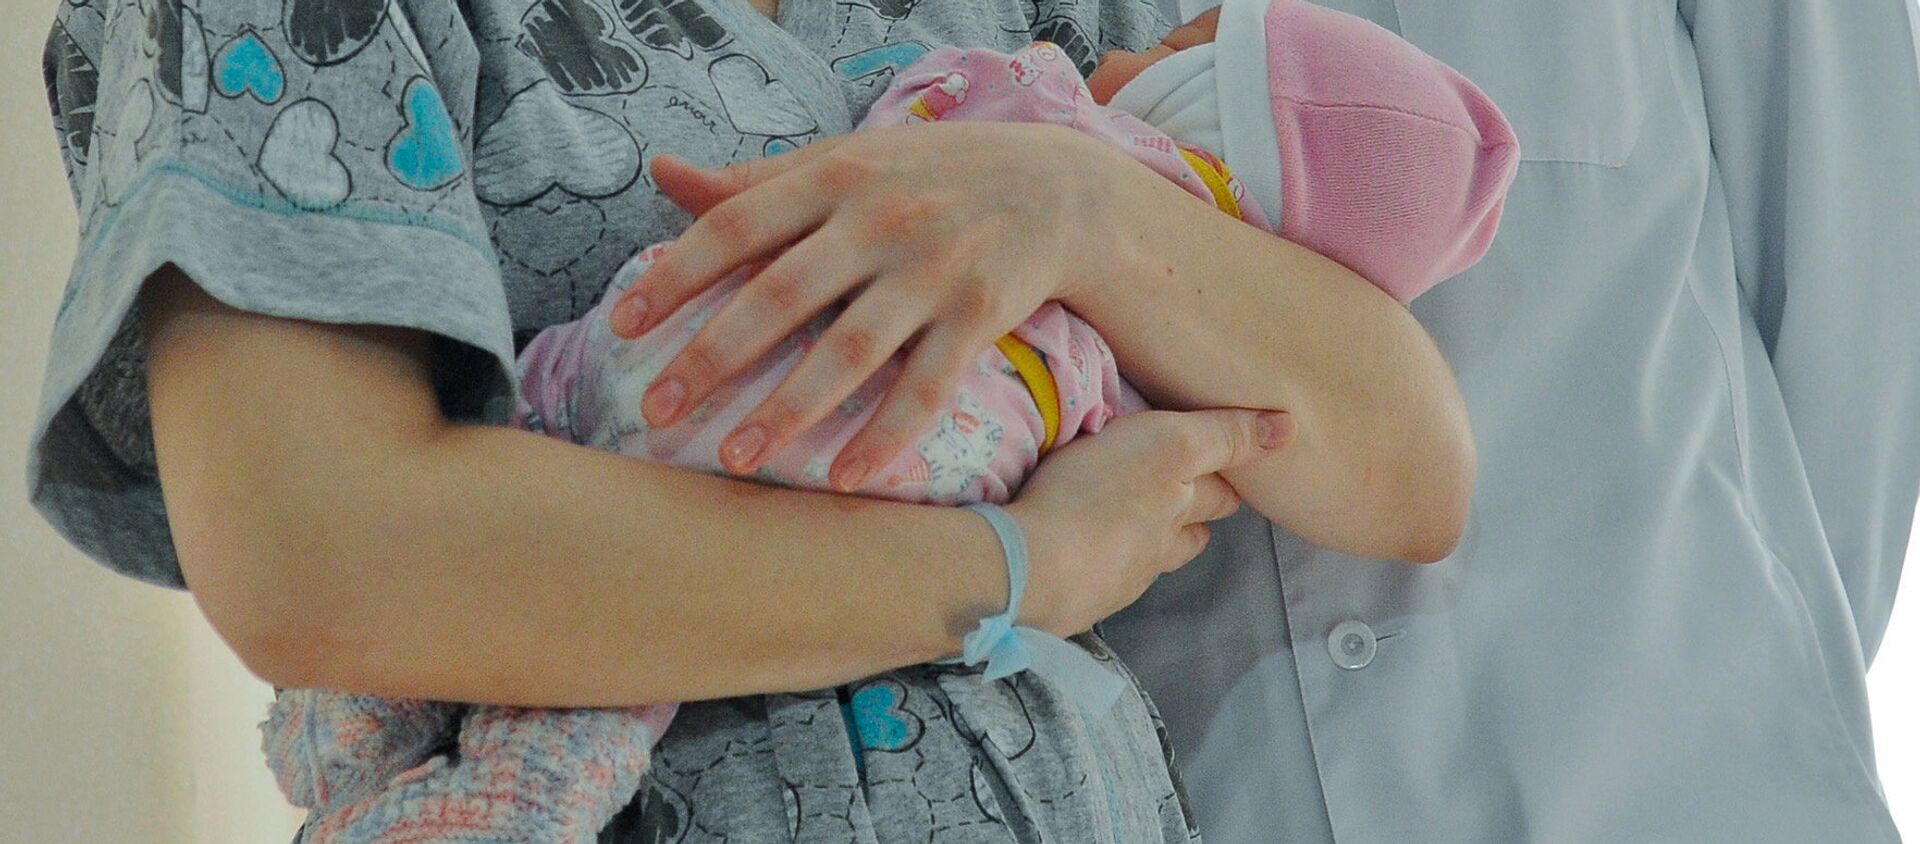 Женщина с новорожденным ребенком. Архивное фото - Sputnik Кыргызстан, 1920, 27.09.2021